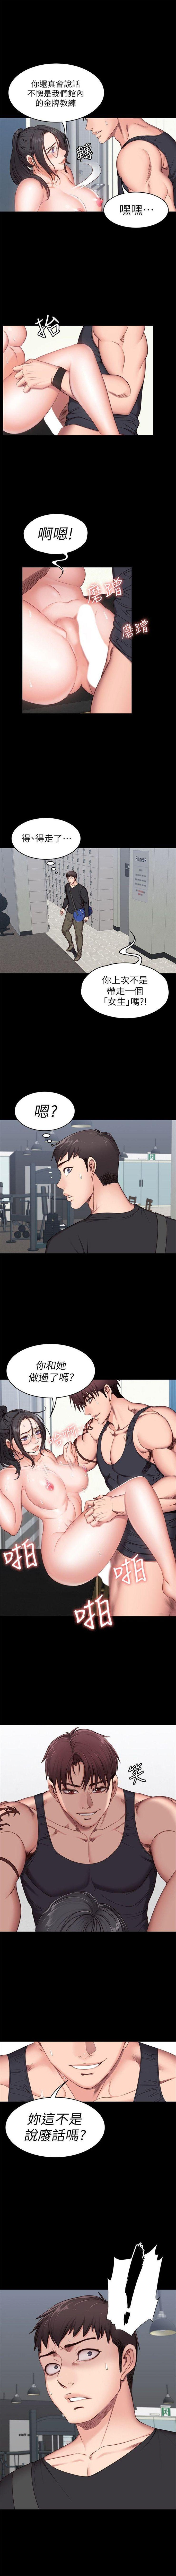 健身教练1-24 中文翻译 （更新中） 30